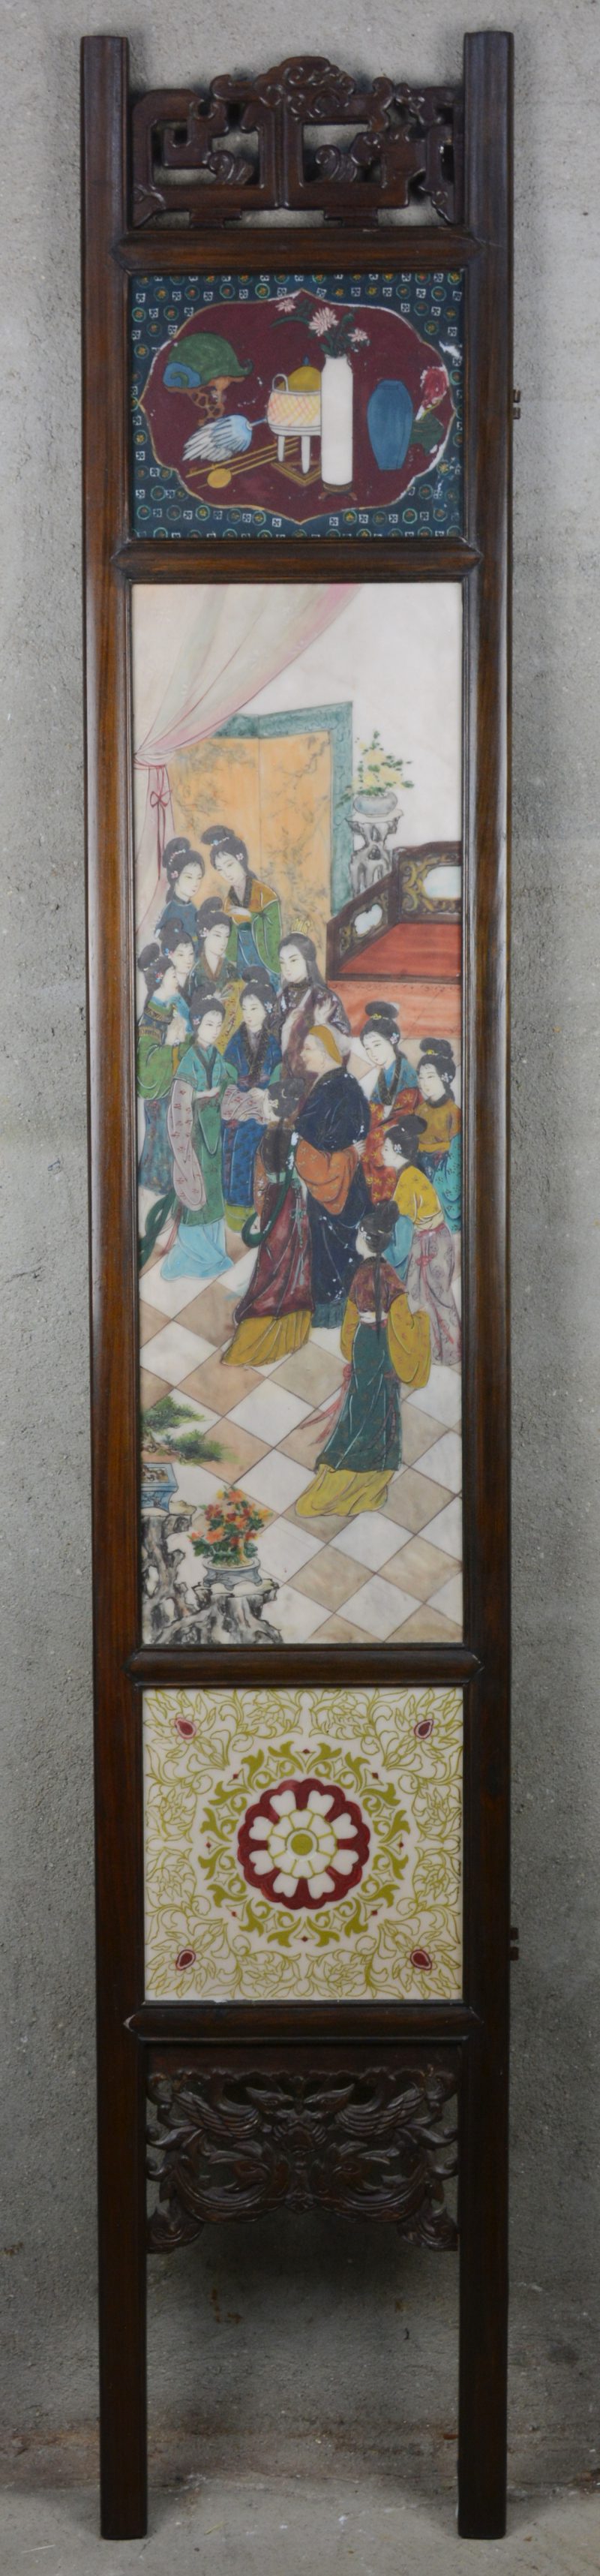 Een Chinees paneel met drie porseleinen plaquettes met personages, landschappen en tekens in een houten frame.